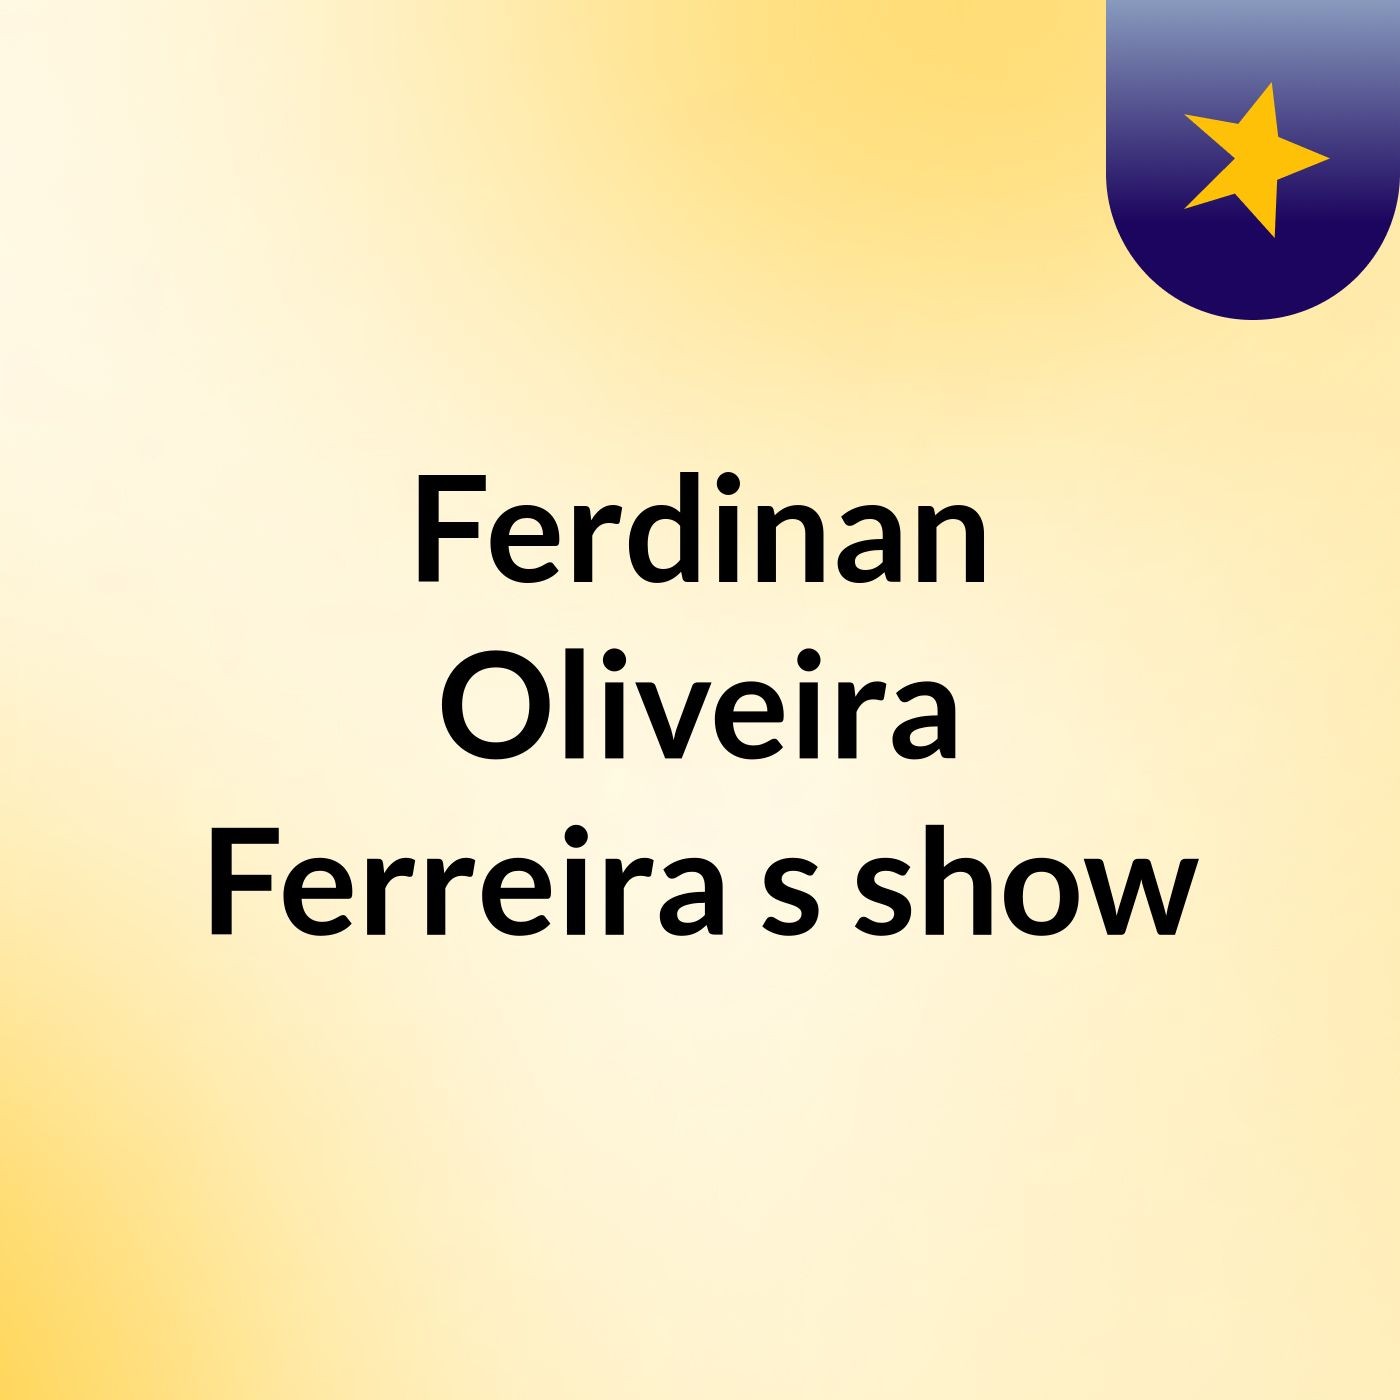 Ferdinan Oliveira Ferreira's show